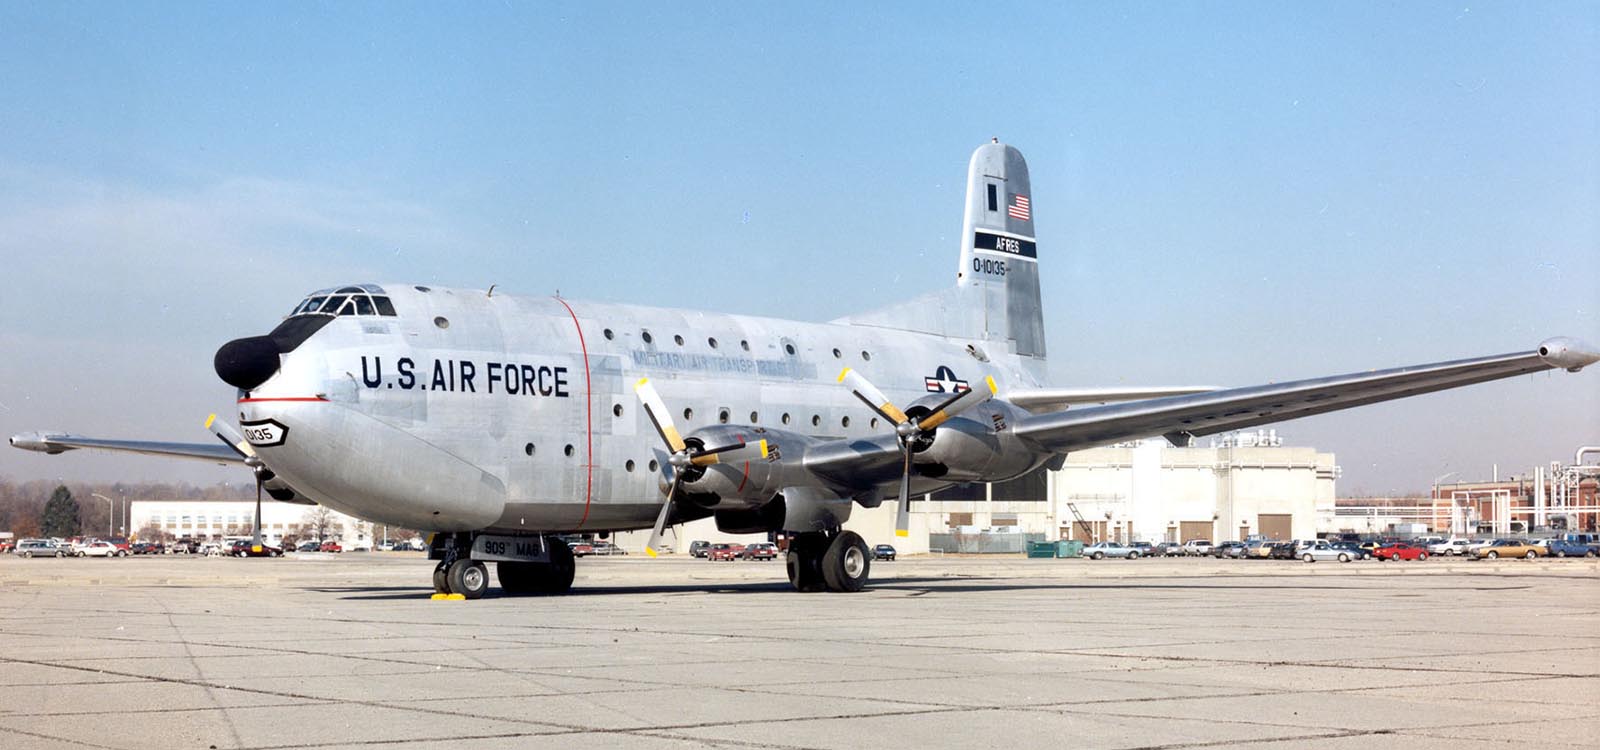 C-124 Globemaster II, 1950